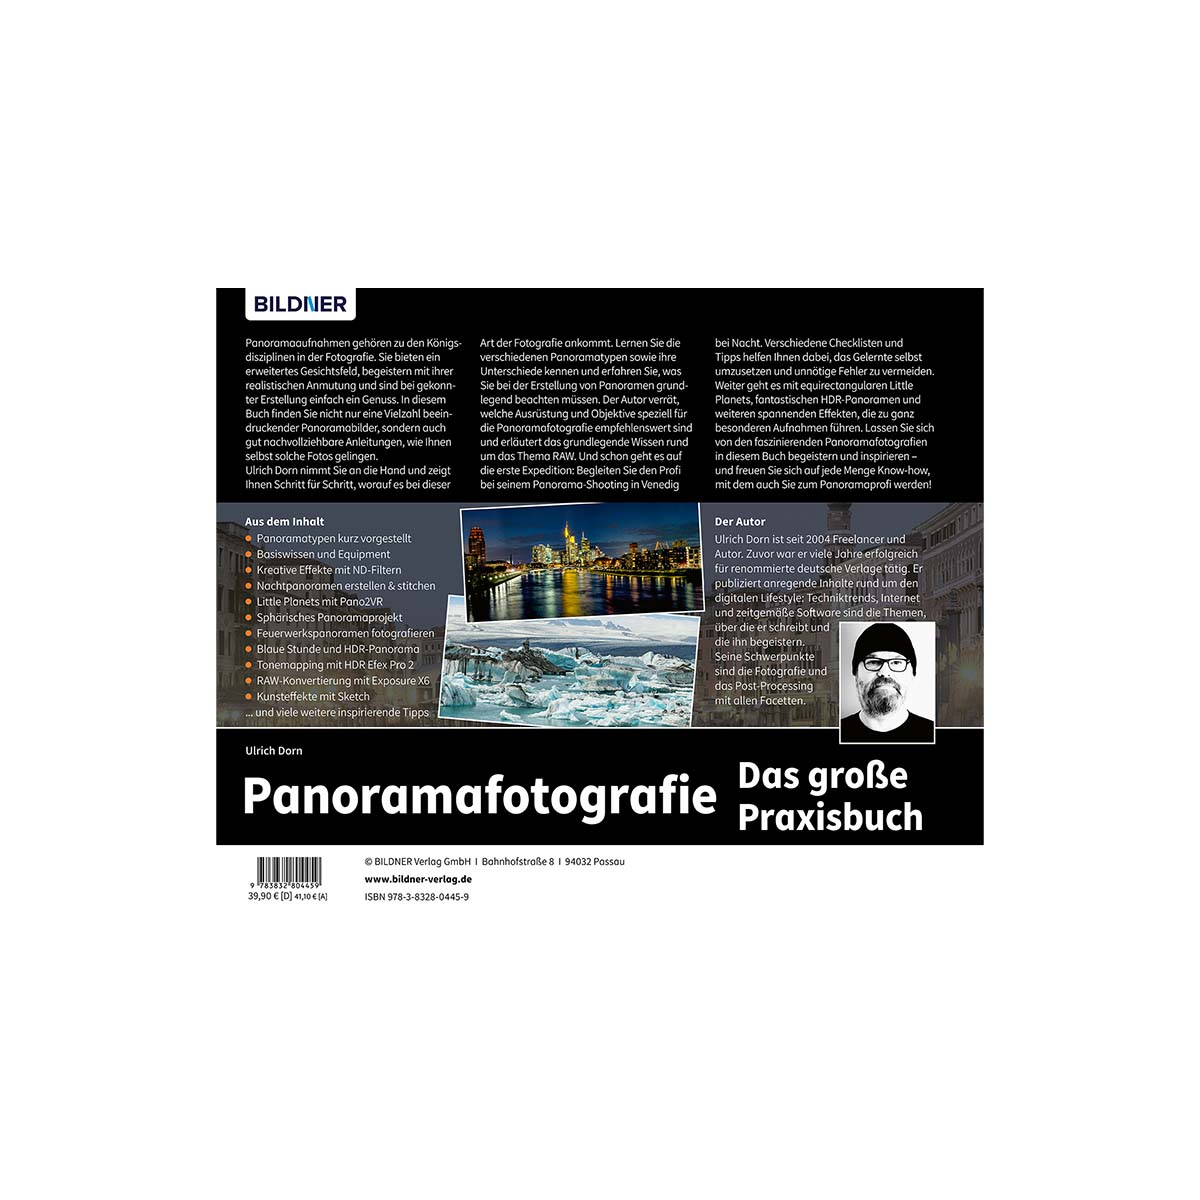 Praxisbuch große - Das Panoramafotografie